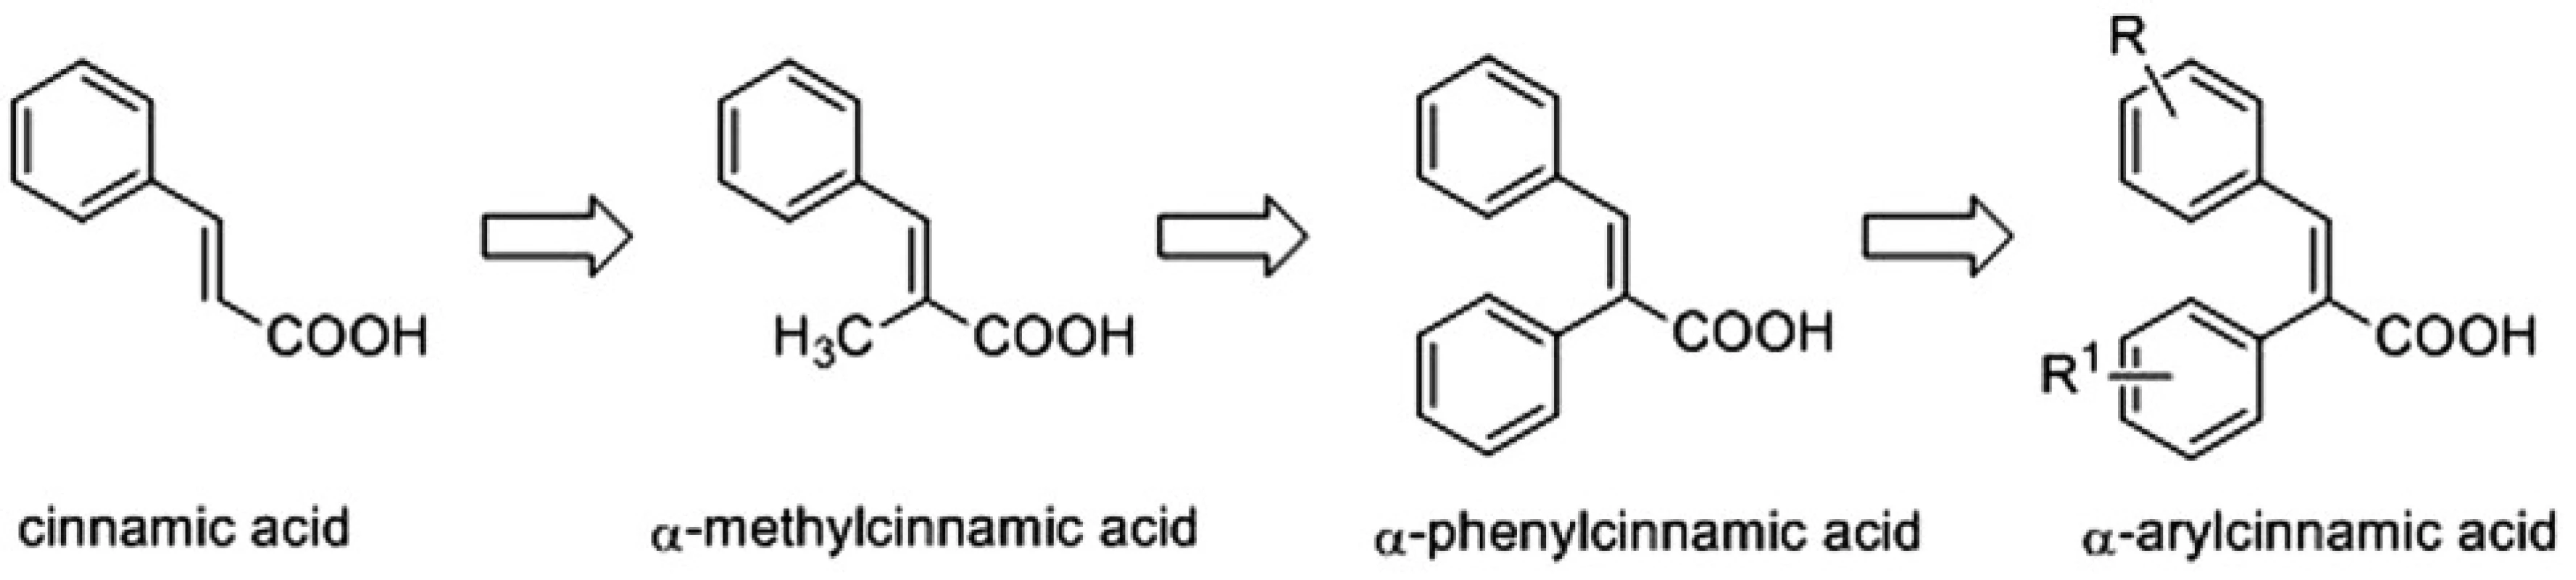 Design of α-arylcinnamic acids